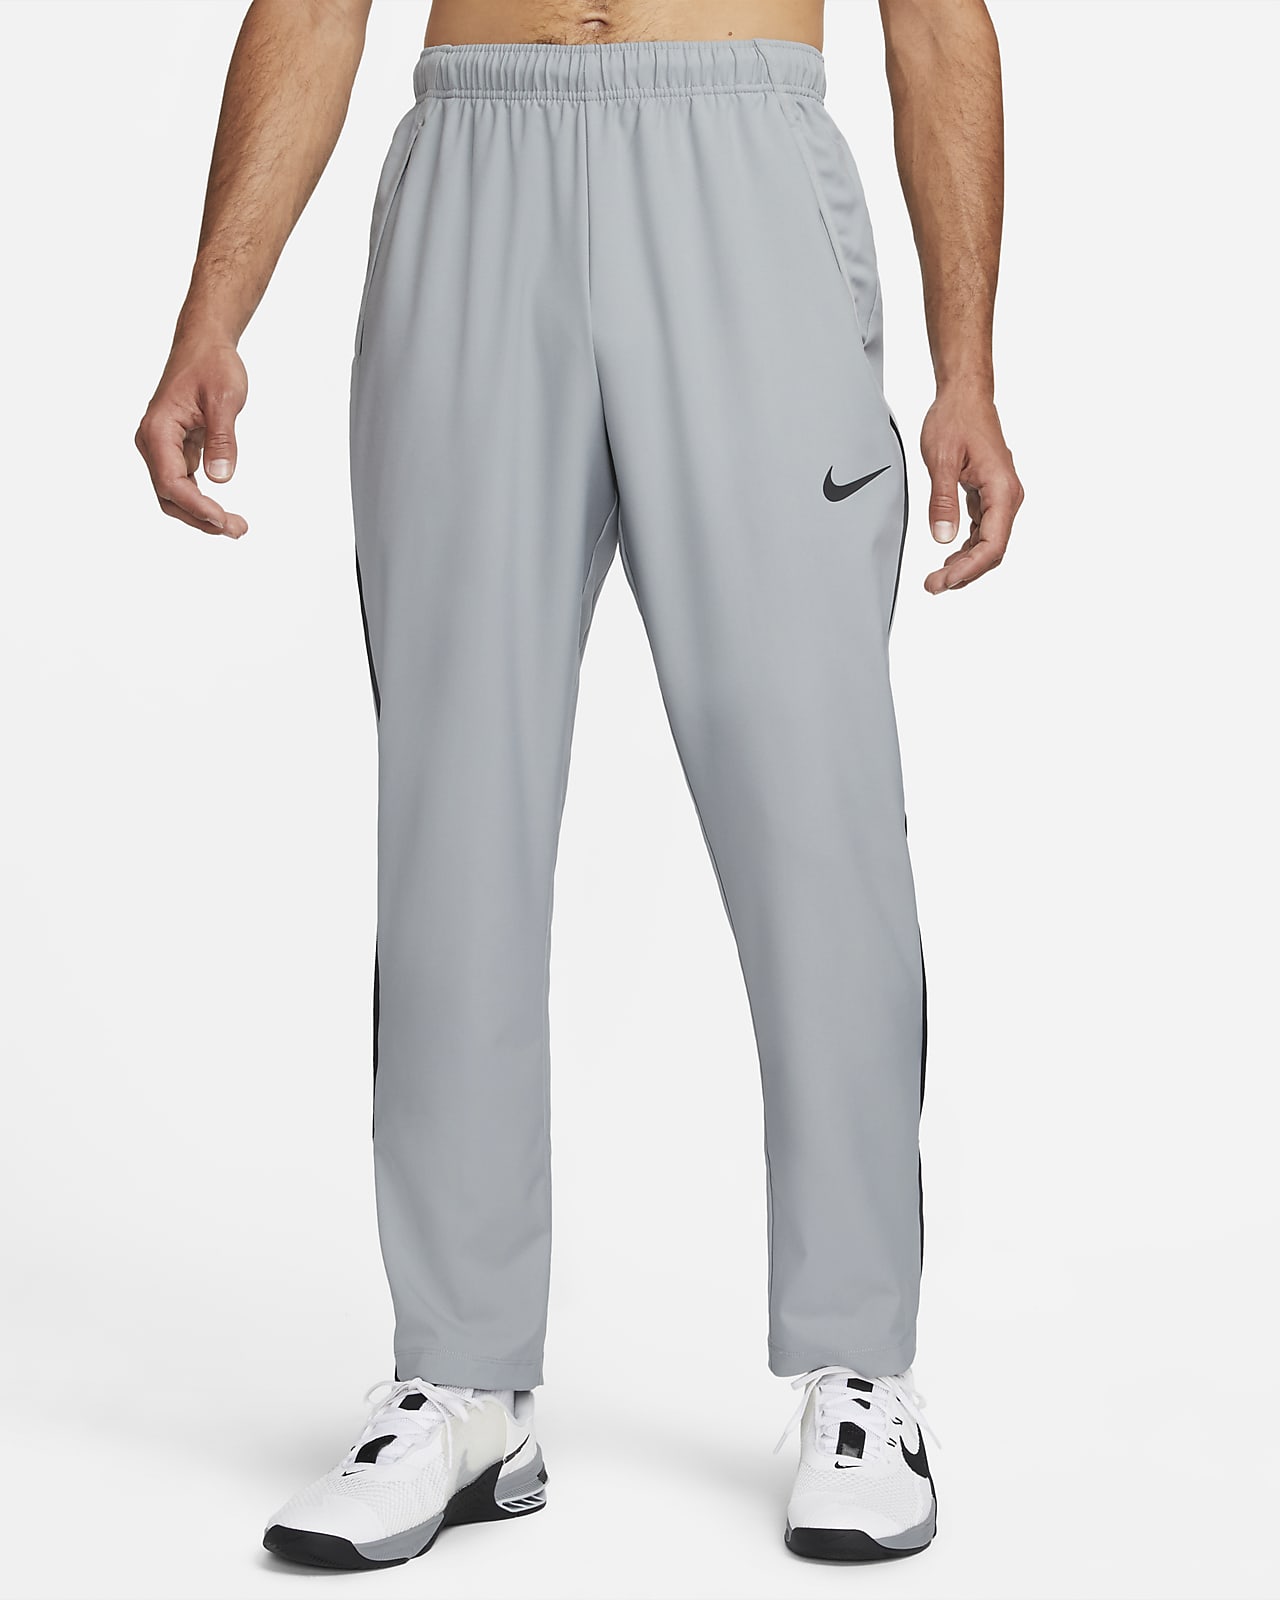 U.S. Men's Knit Soccer Pants. Nike.com